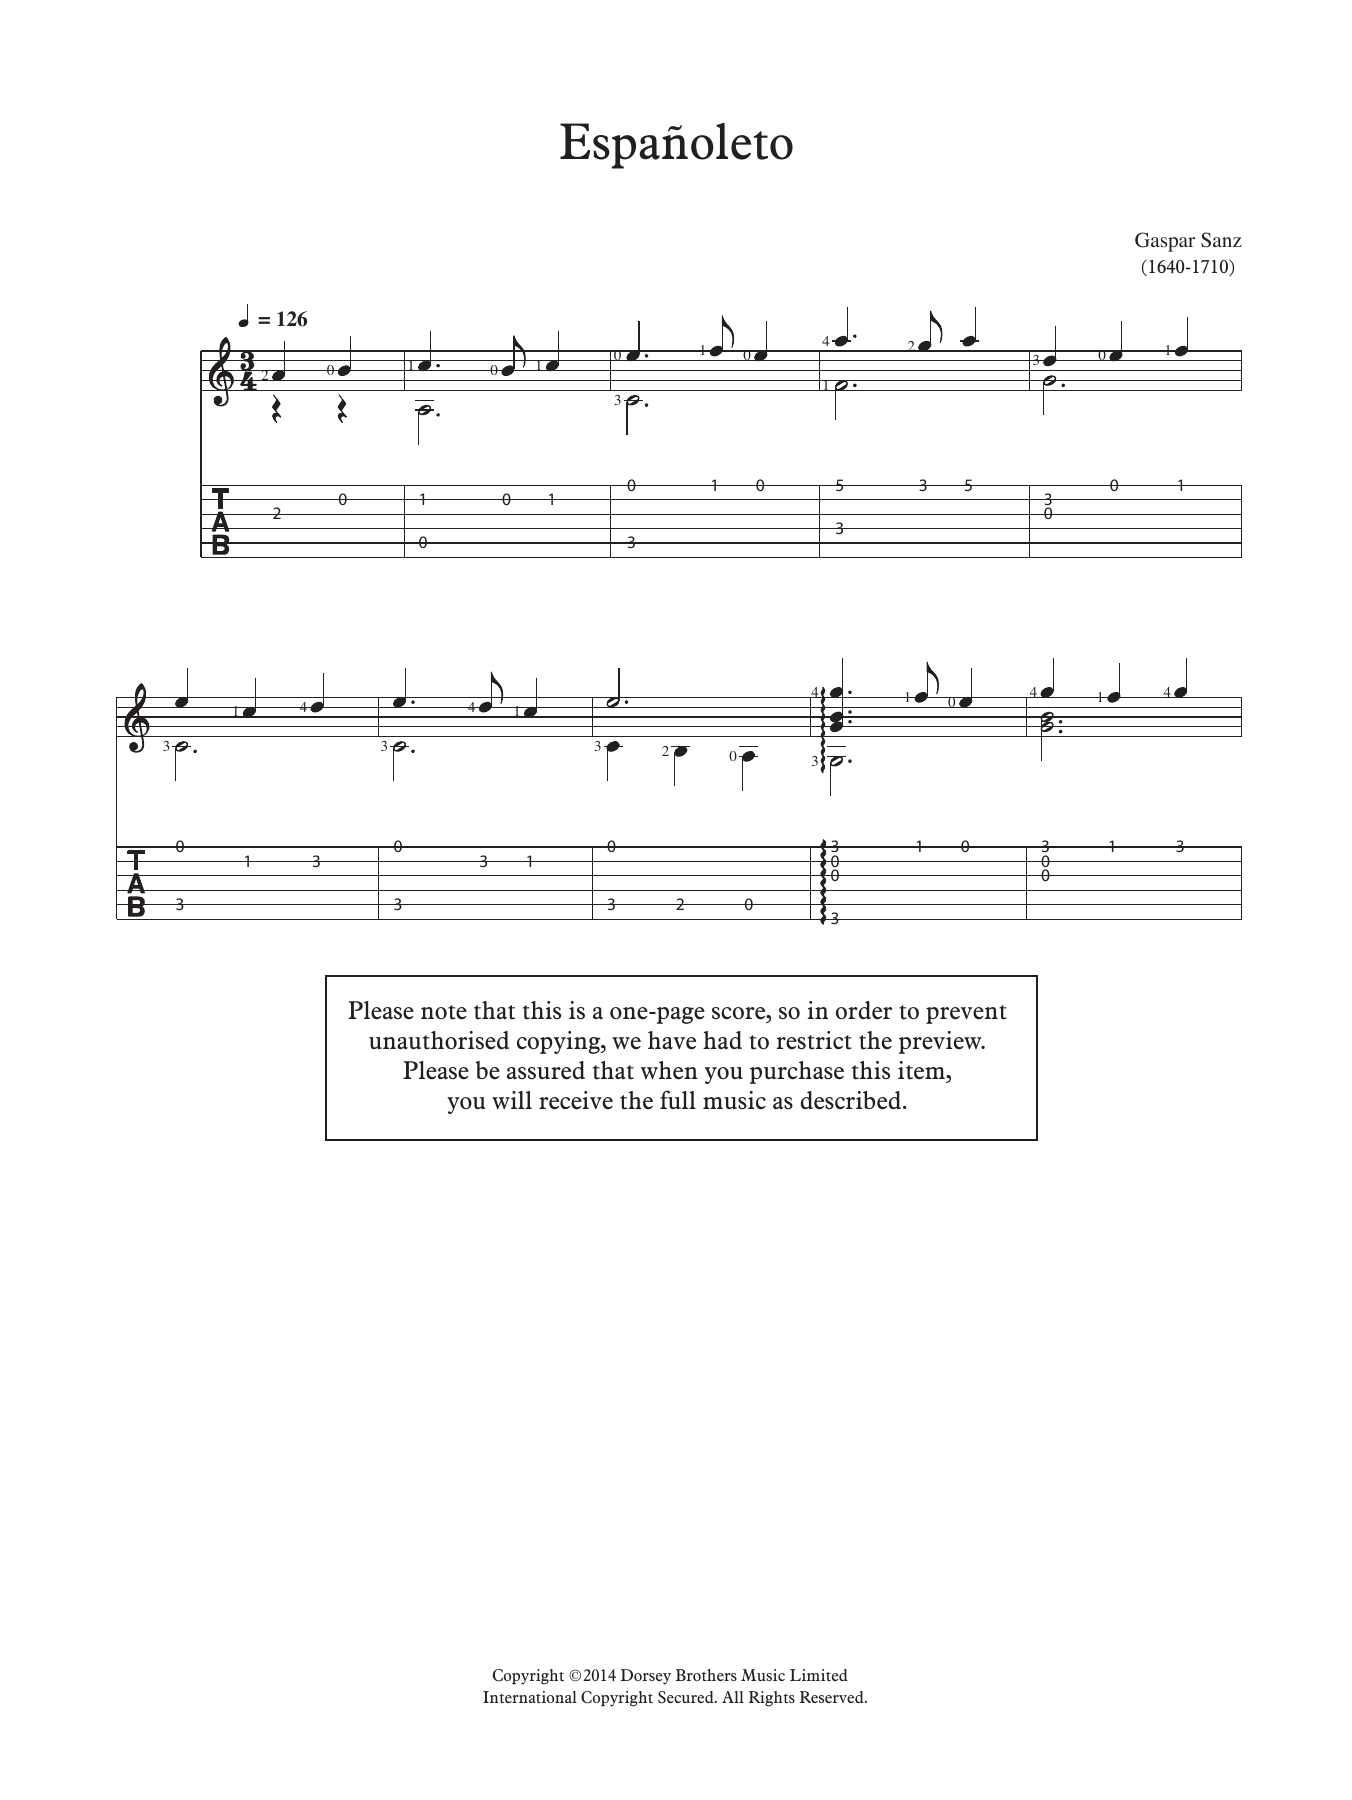 Gaspar Sanz Espanoleto Sheet Music Notes & Chords for Guitar - Download or Print PDF